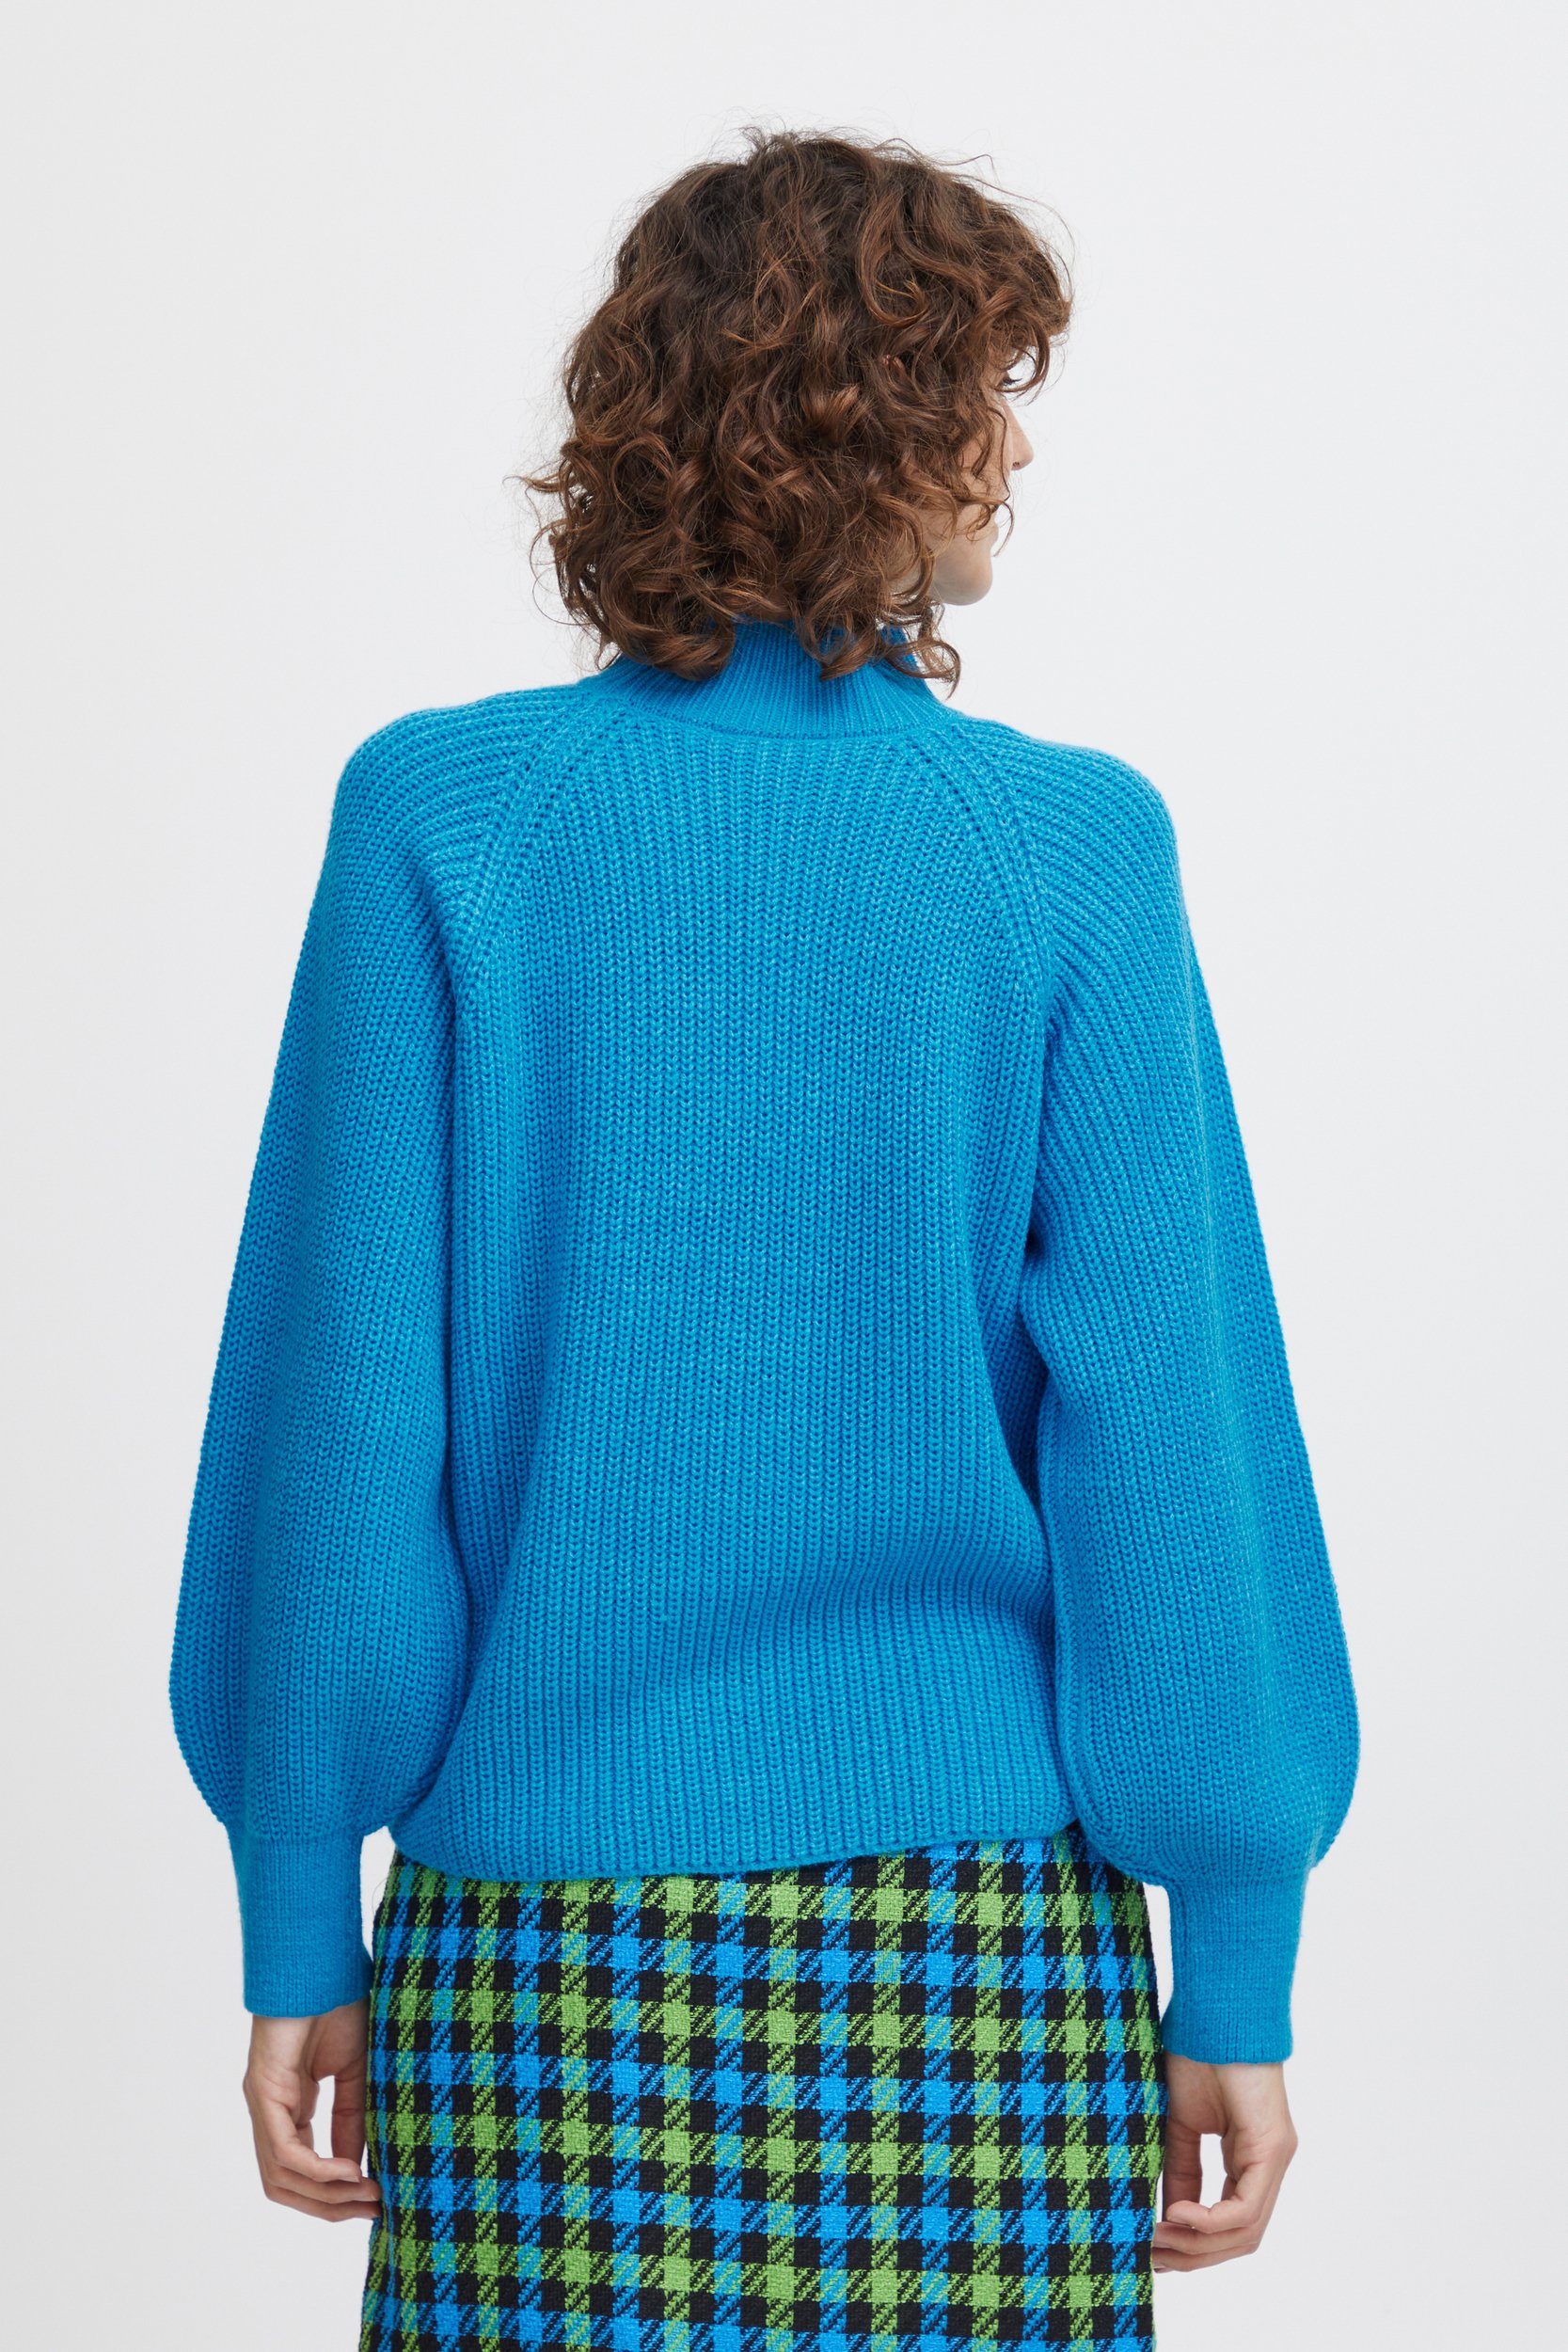 6692 Ballonärmeln Sweater mit Kragen Grobstrick Pullover Strickpullover Blau b.young in mit